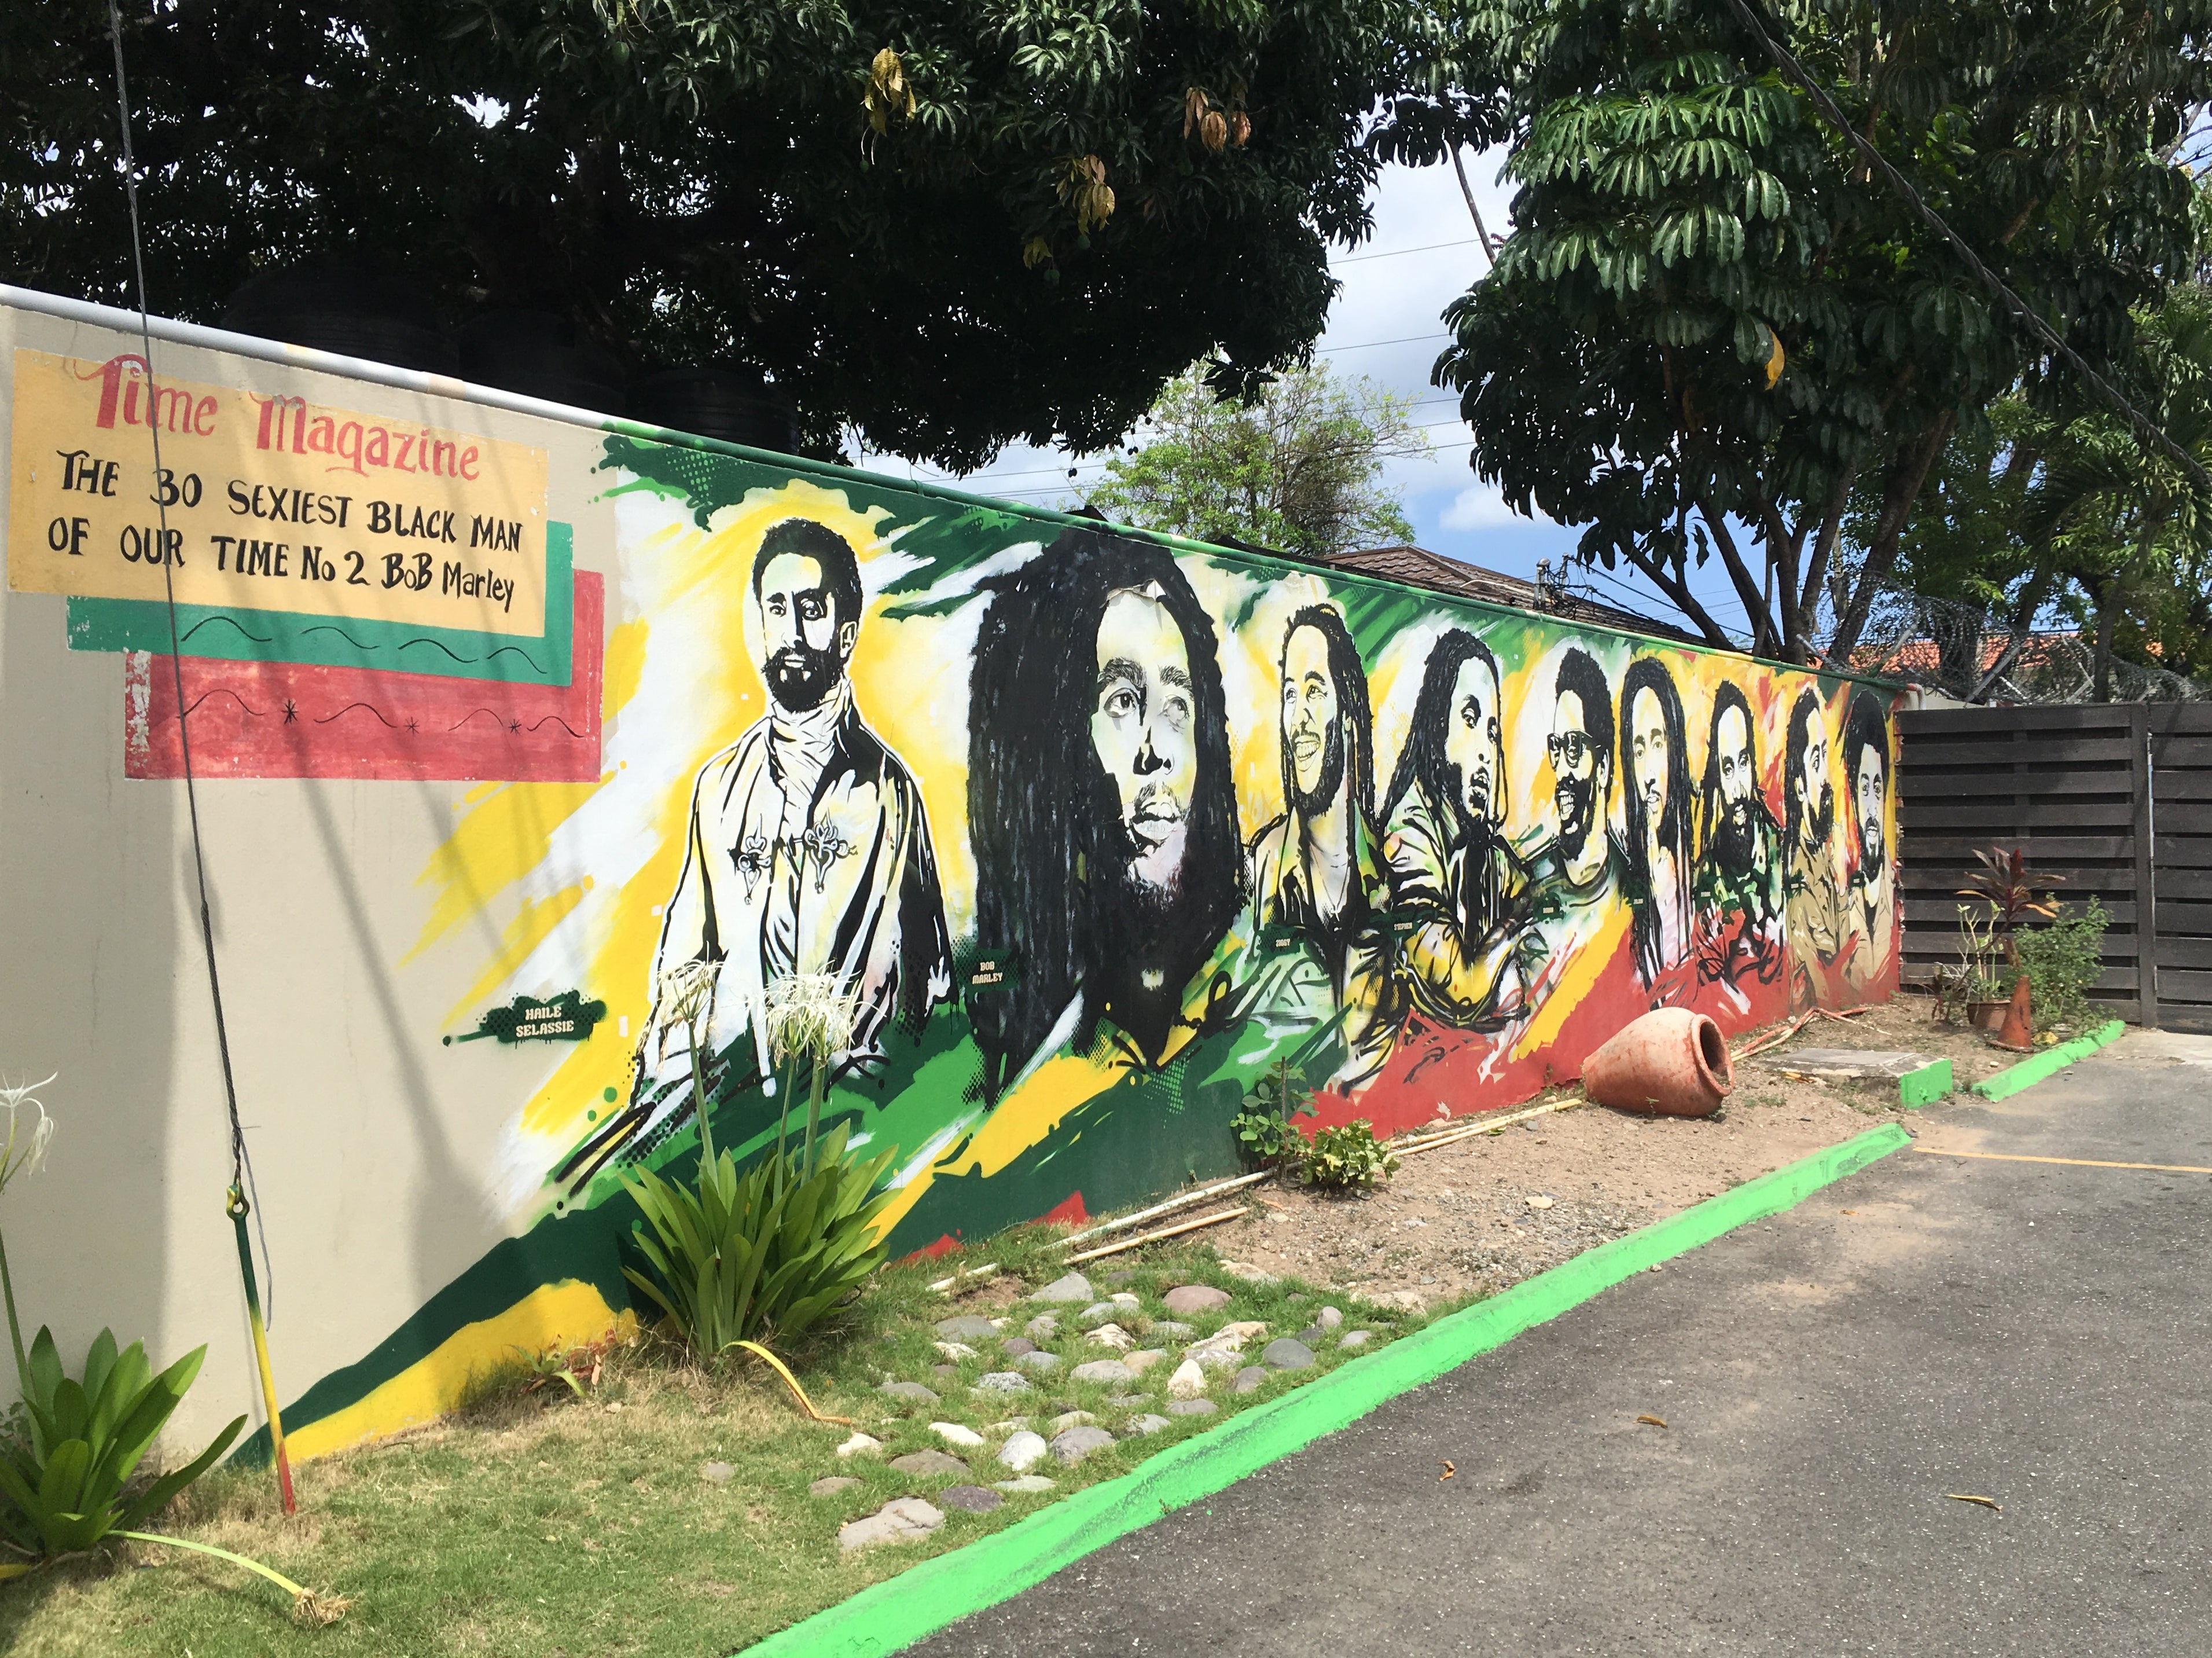 Bob Marley’s legacy can be felt across Jamaica